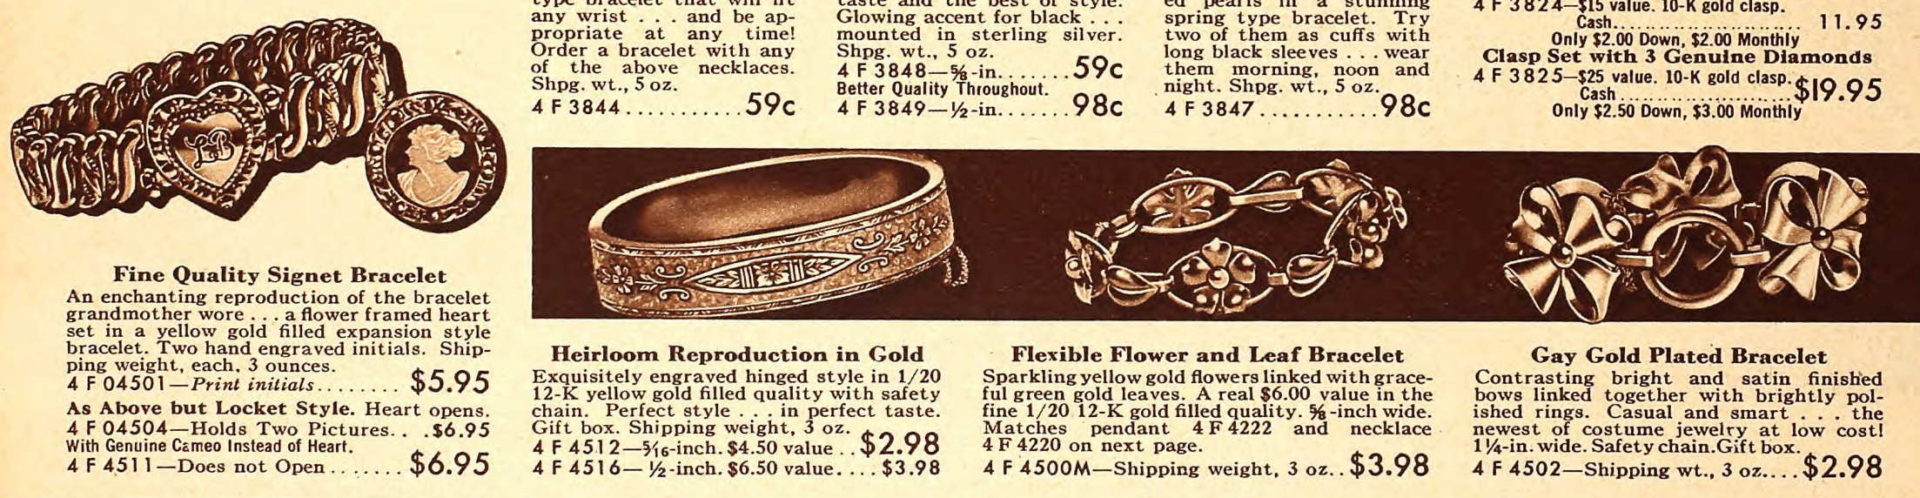 1940 bracelets jewelry women